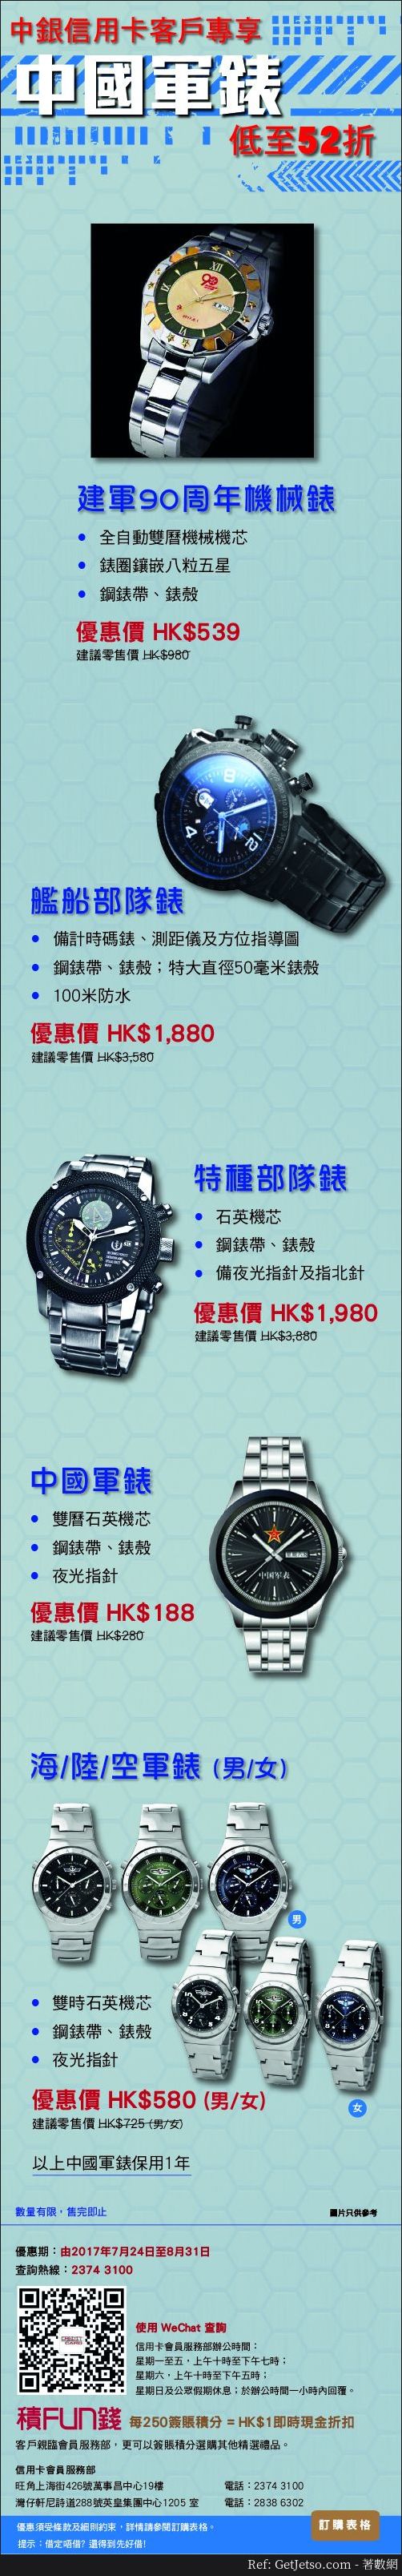 中銀信用卡享中國軍錶低至52折優惠(至17年8月31日)圖片1